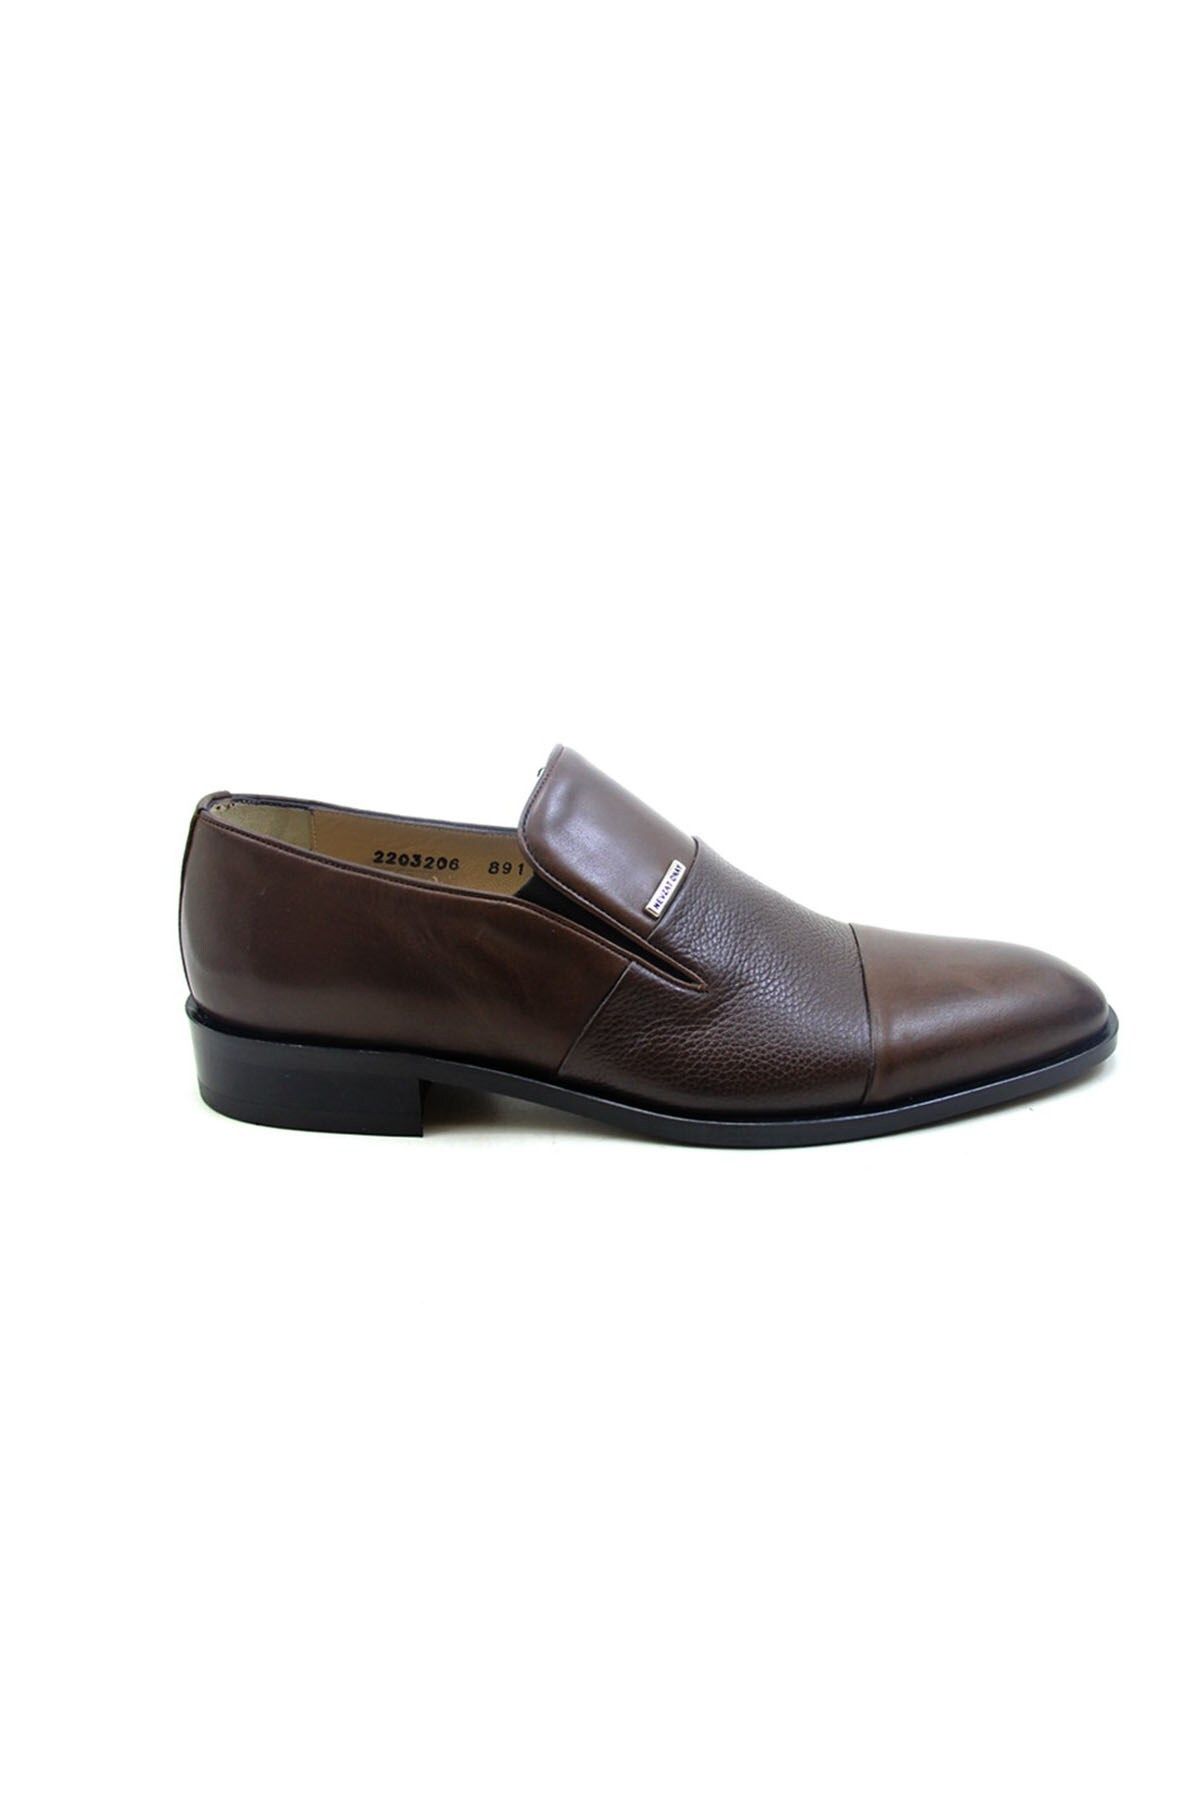 Nevzat Onay 891-223 Erkek Klasik Ayakkabı - Kahverengi